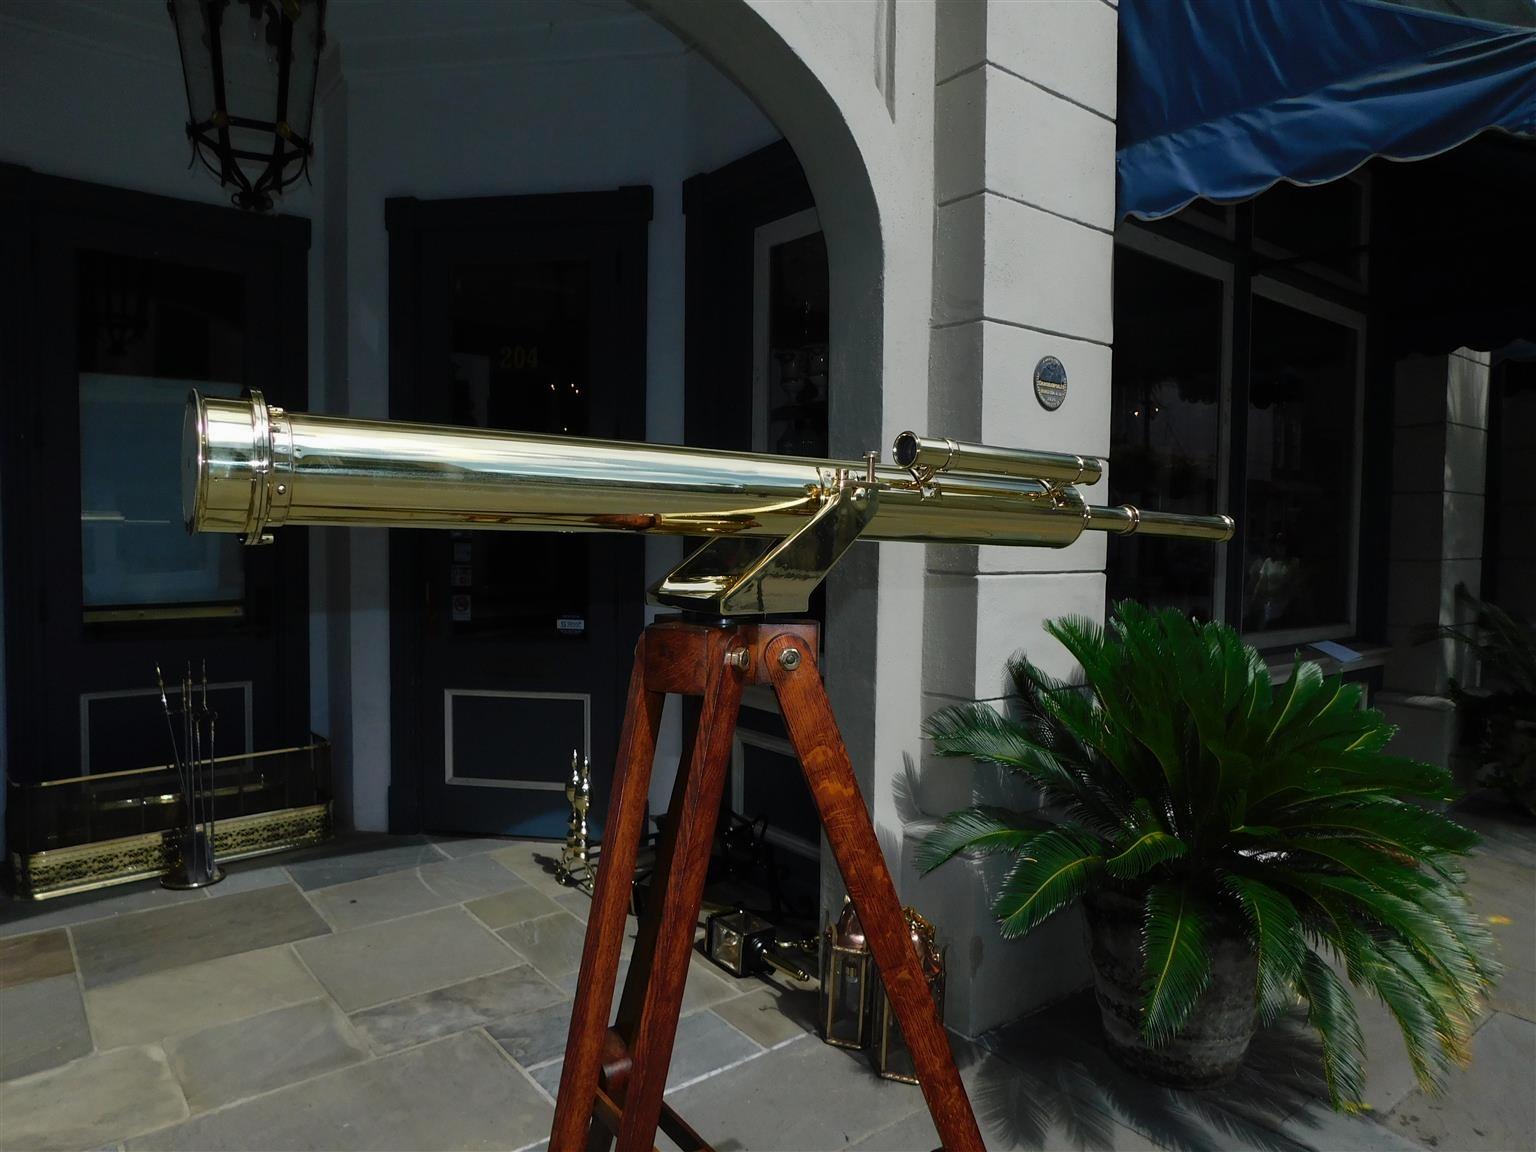 Mid-19th Century English Brass Telescope on Tripod Stand Signed Negretti & Zambra London, C. 1850